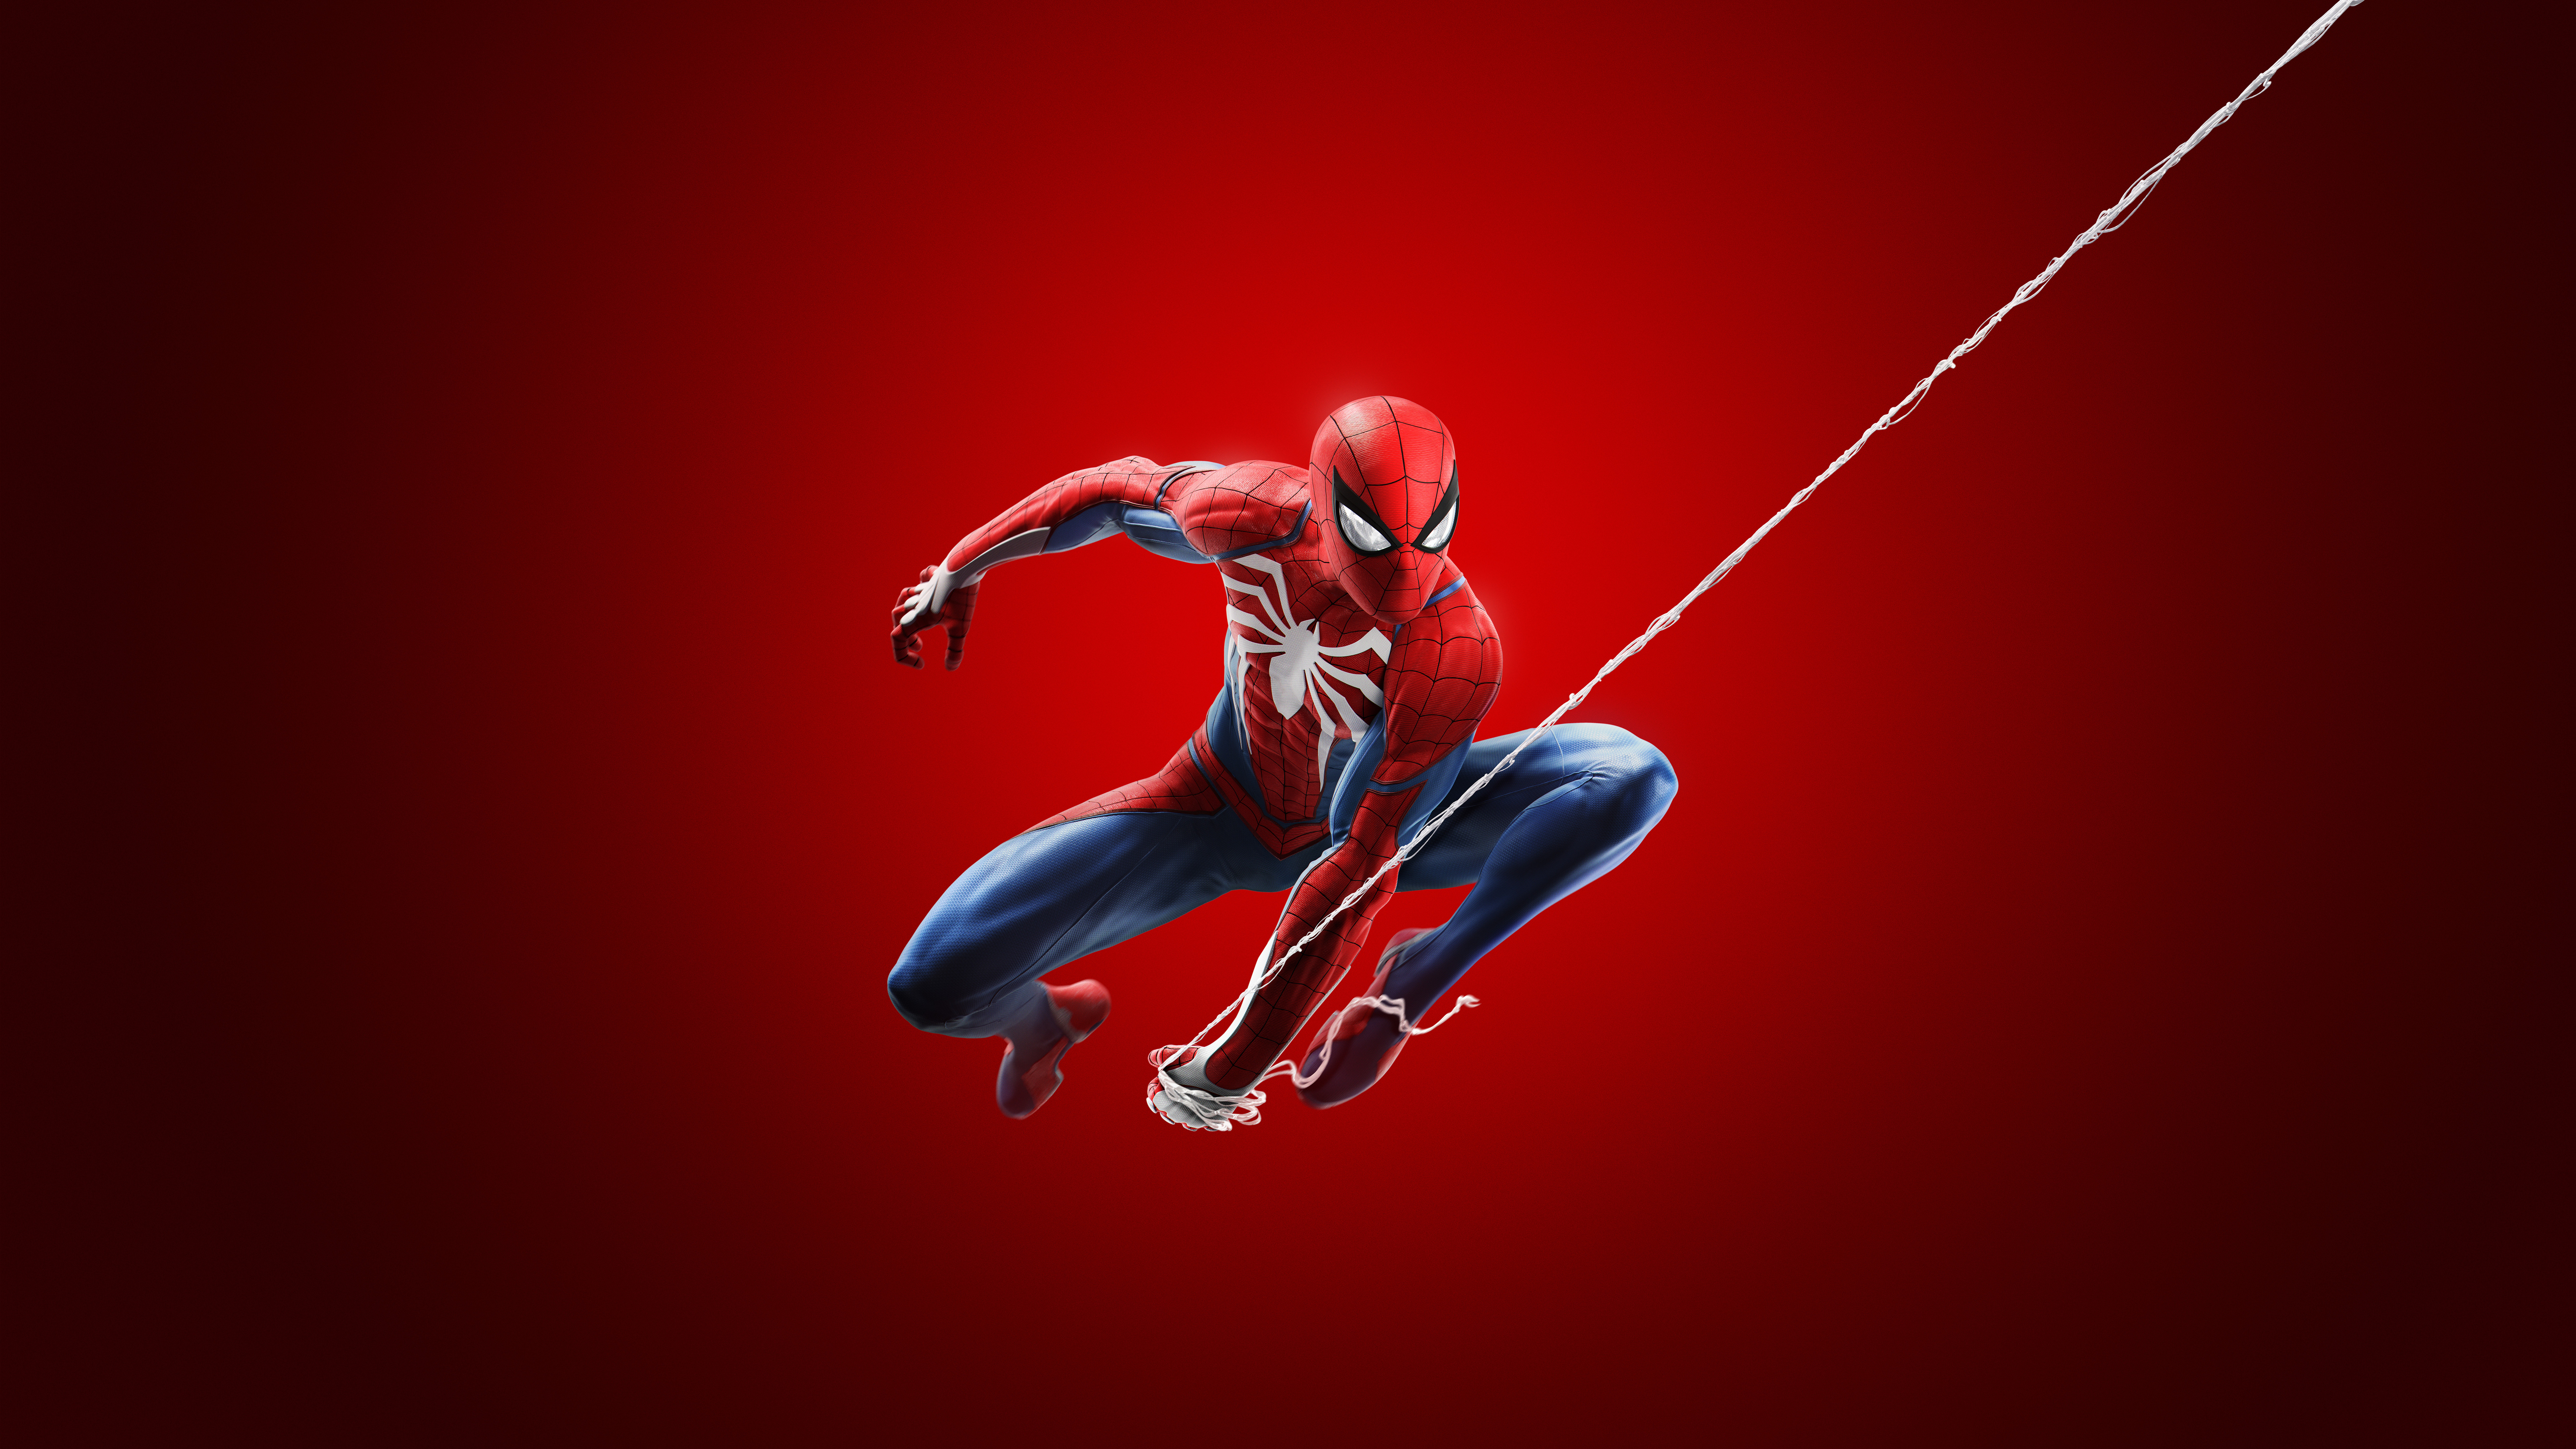 r mcek adam wallpaper,rosso,personaggio fittizio,supereroe,uomo ragno,animazione